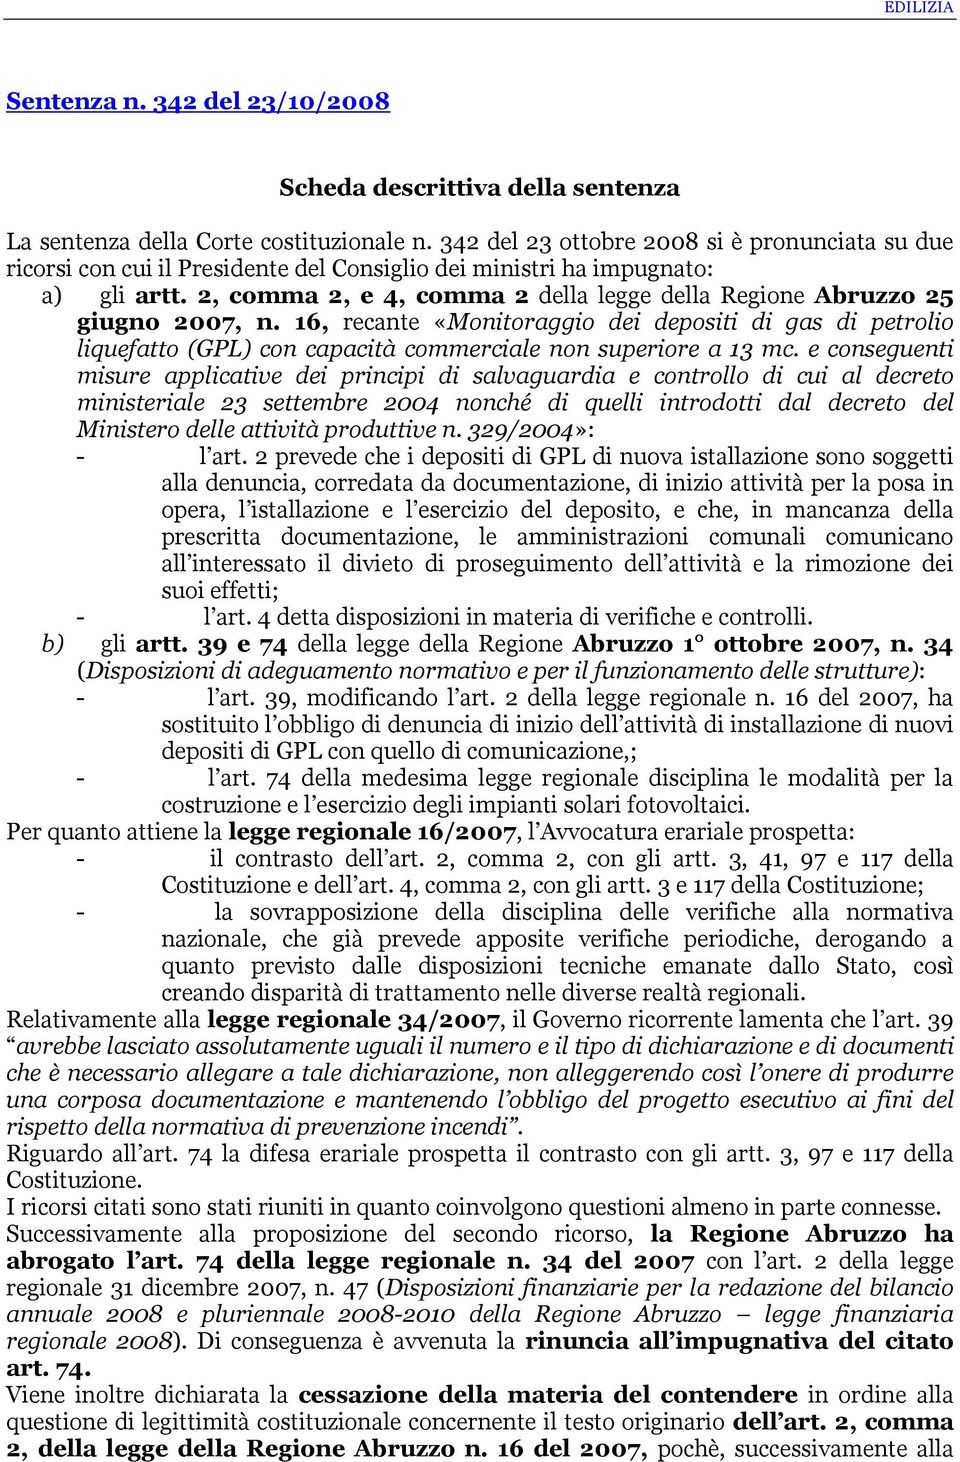 2, comma 2, e 4, comma 2 della legge della Regione Abruzzo 25 giugno 2007, n. 16, recante «Monitoraggio dei depositi di gas di petrolio liquefatto (GPL) con capacità commerciale non superiore a 13 mc.